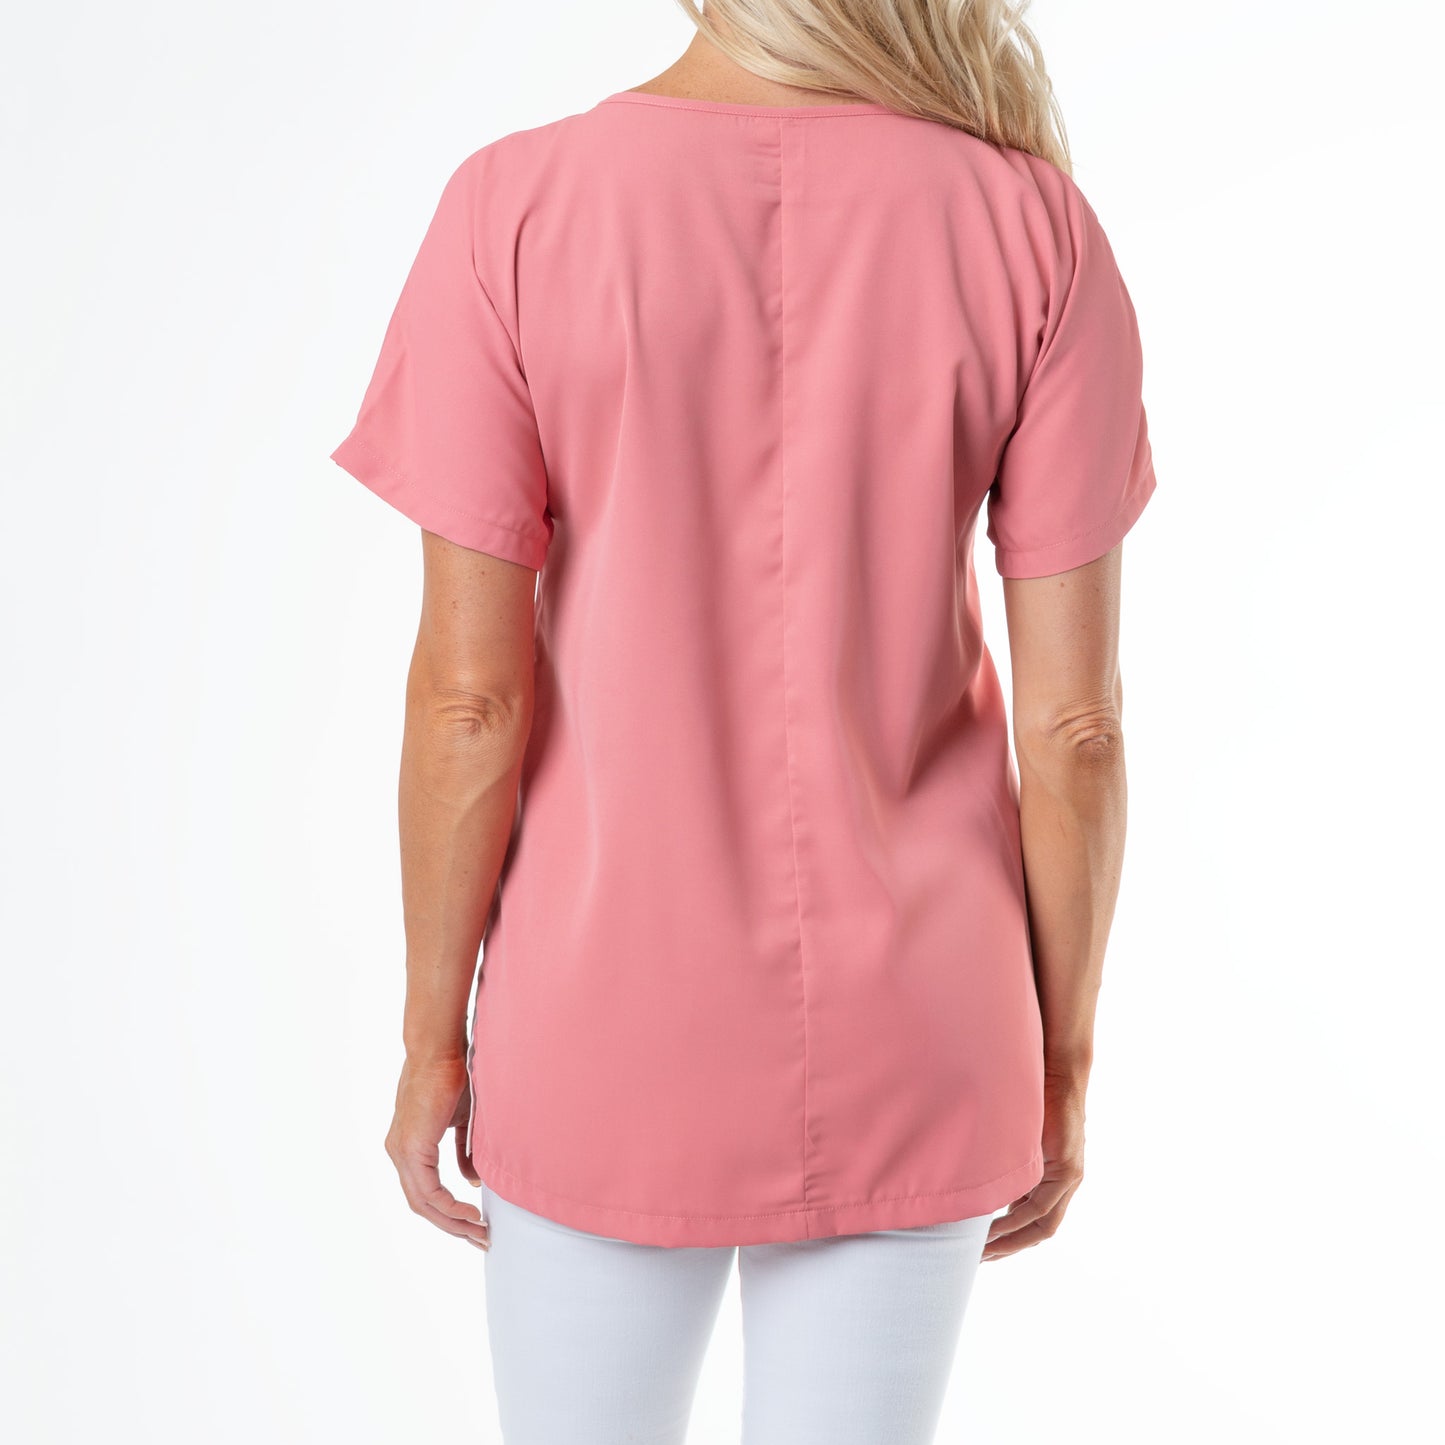 Sofia Short Sleeve Crewneck Color block T-Shirt